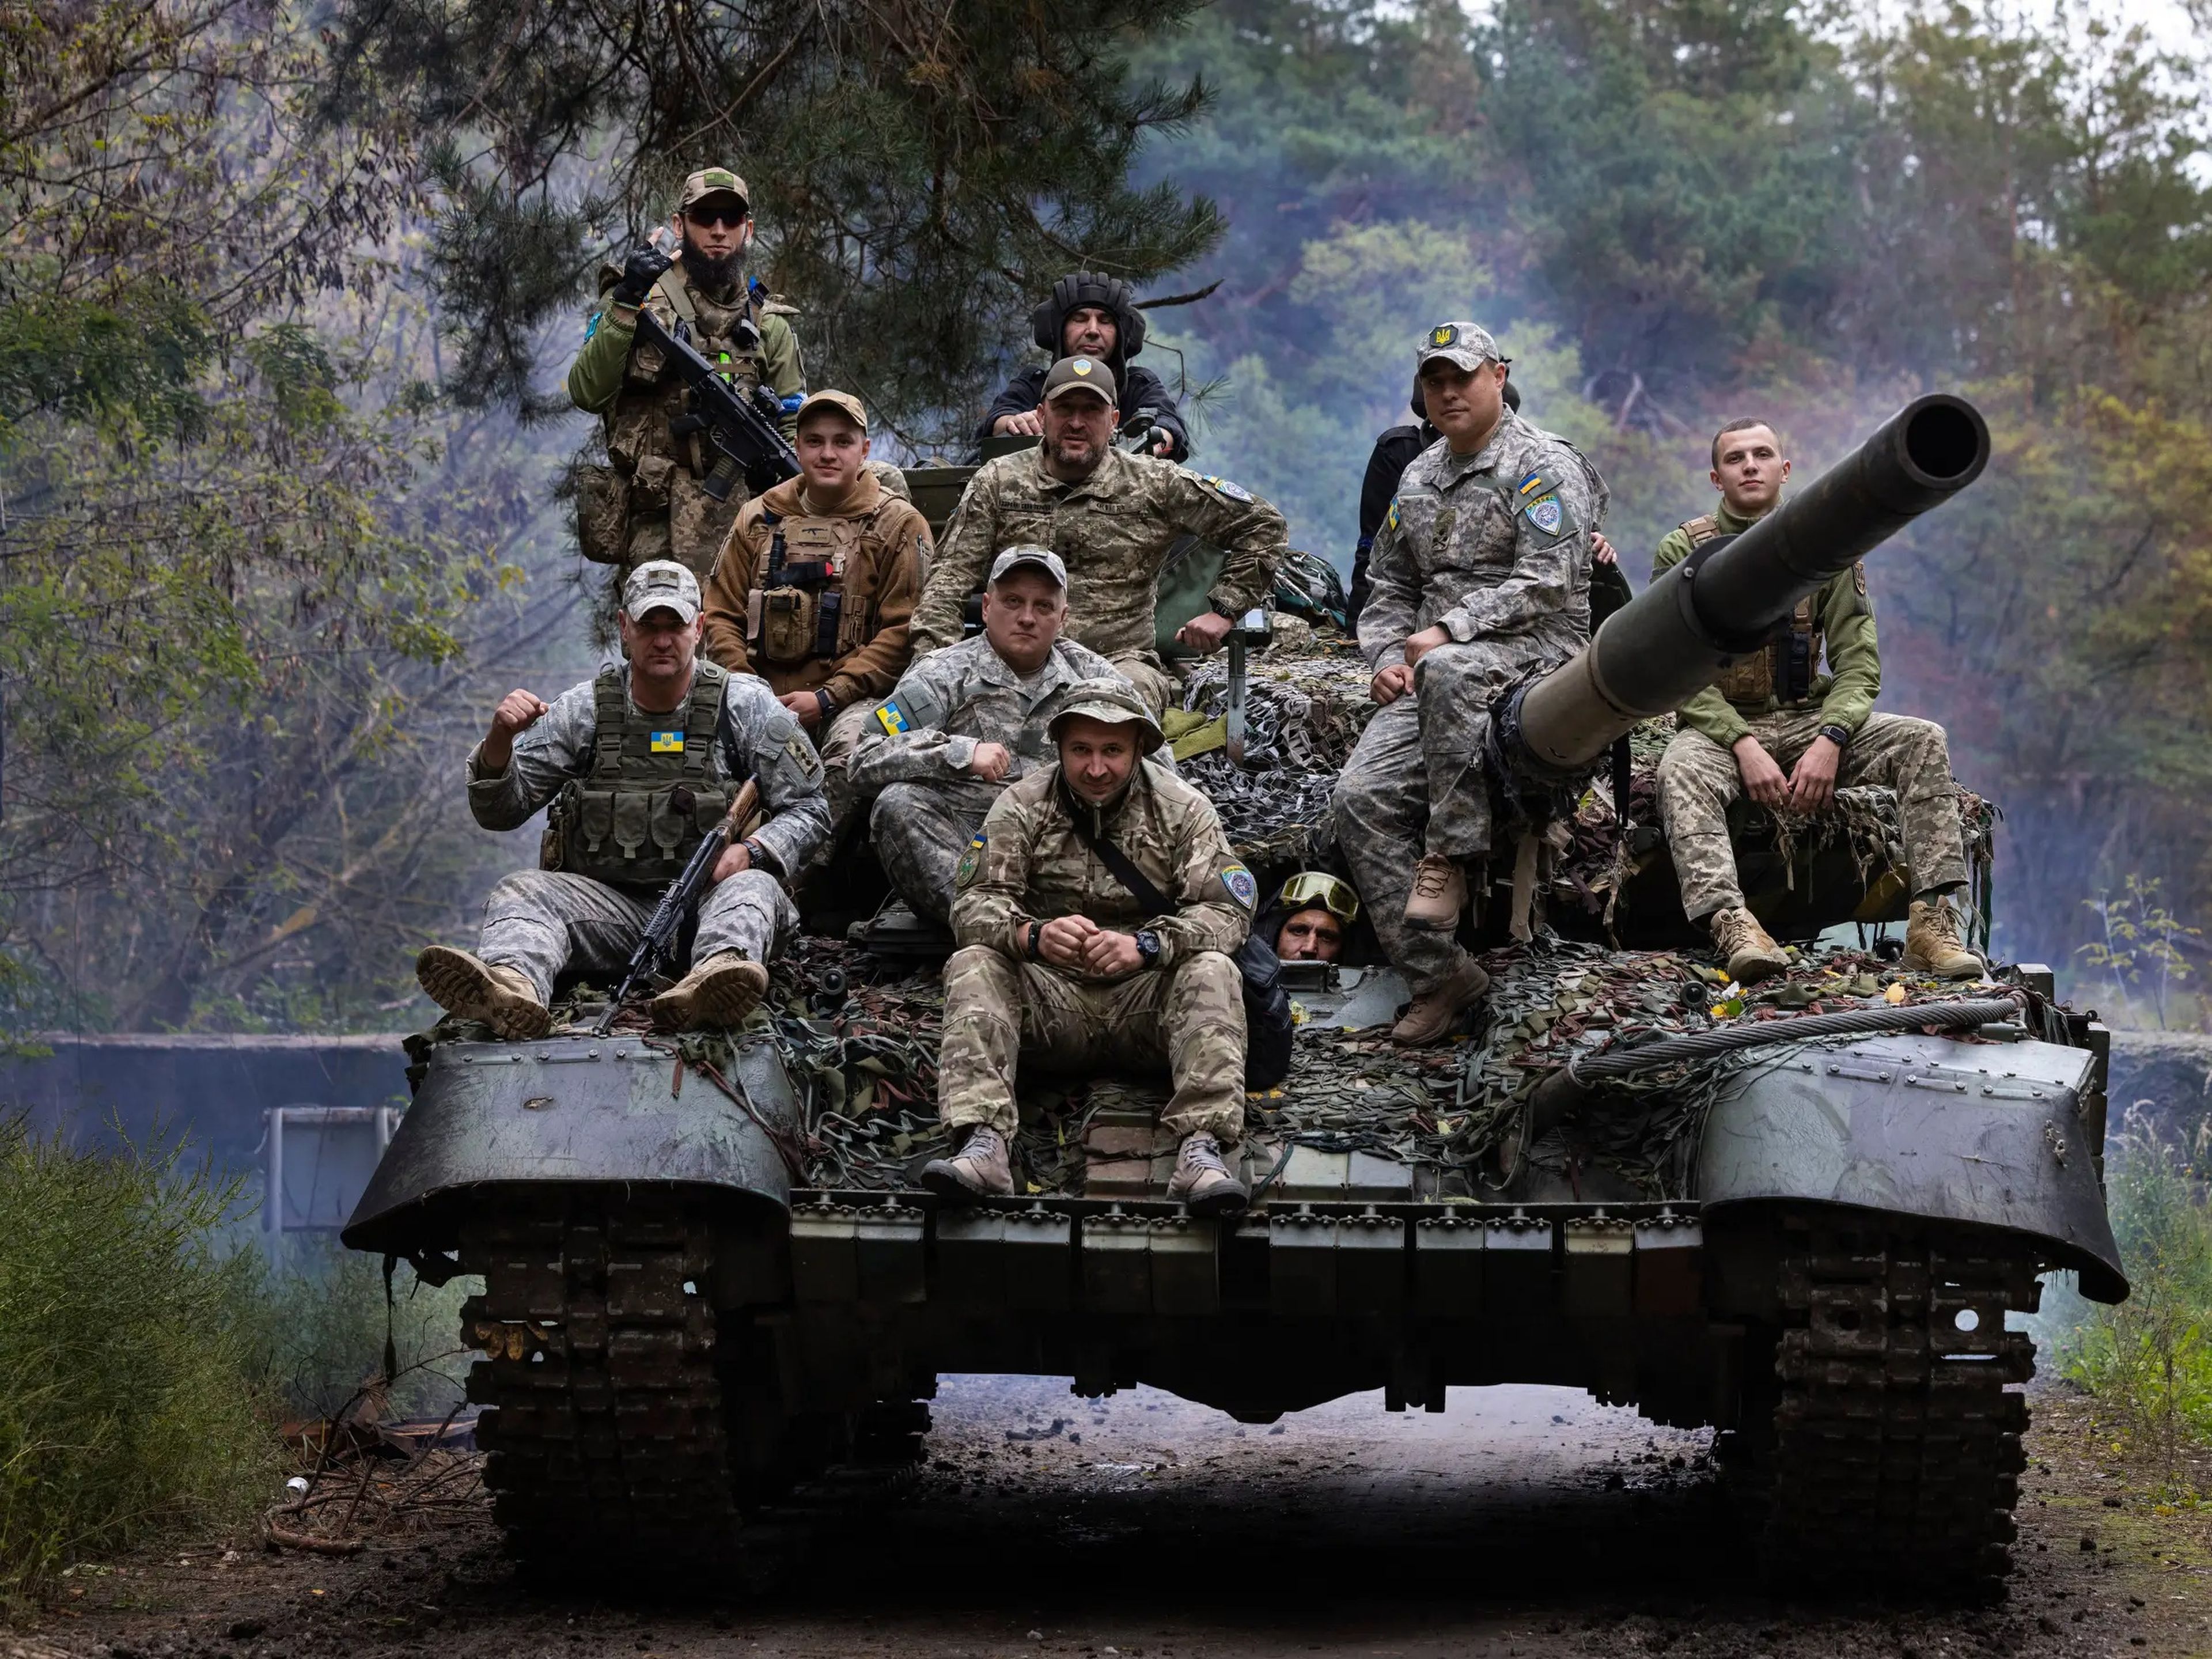 Tropas ucranianas suben a un tanque ruso reparado en una zona boscosa a las afueras de la ciudad el 26 de septiembre de 2022 en Járkov, Ucrania.